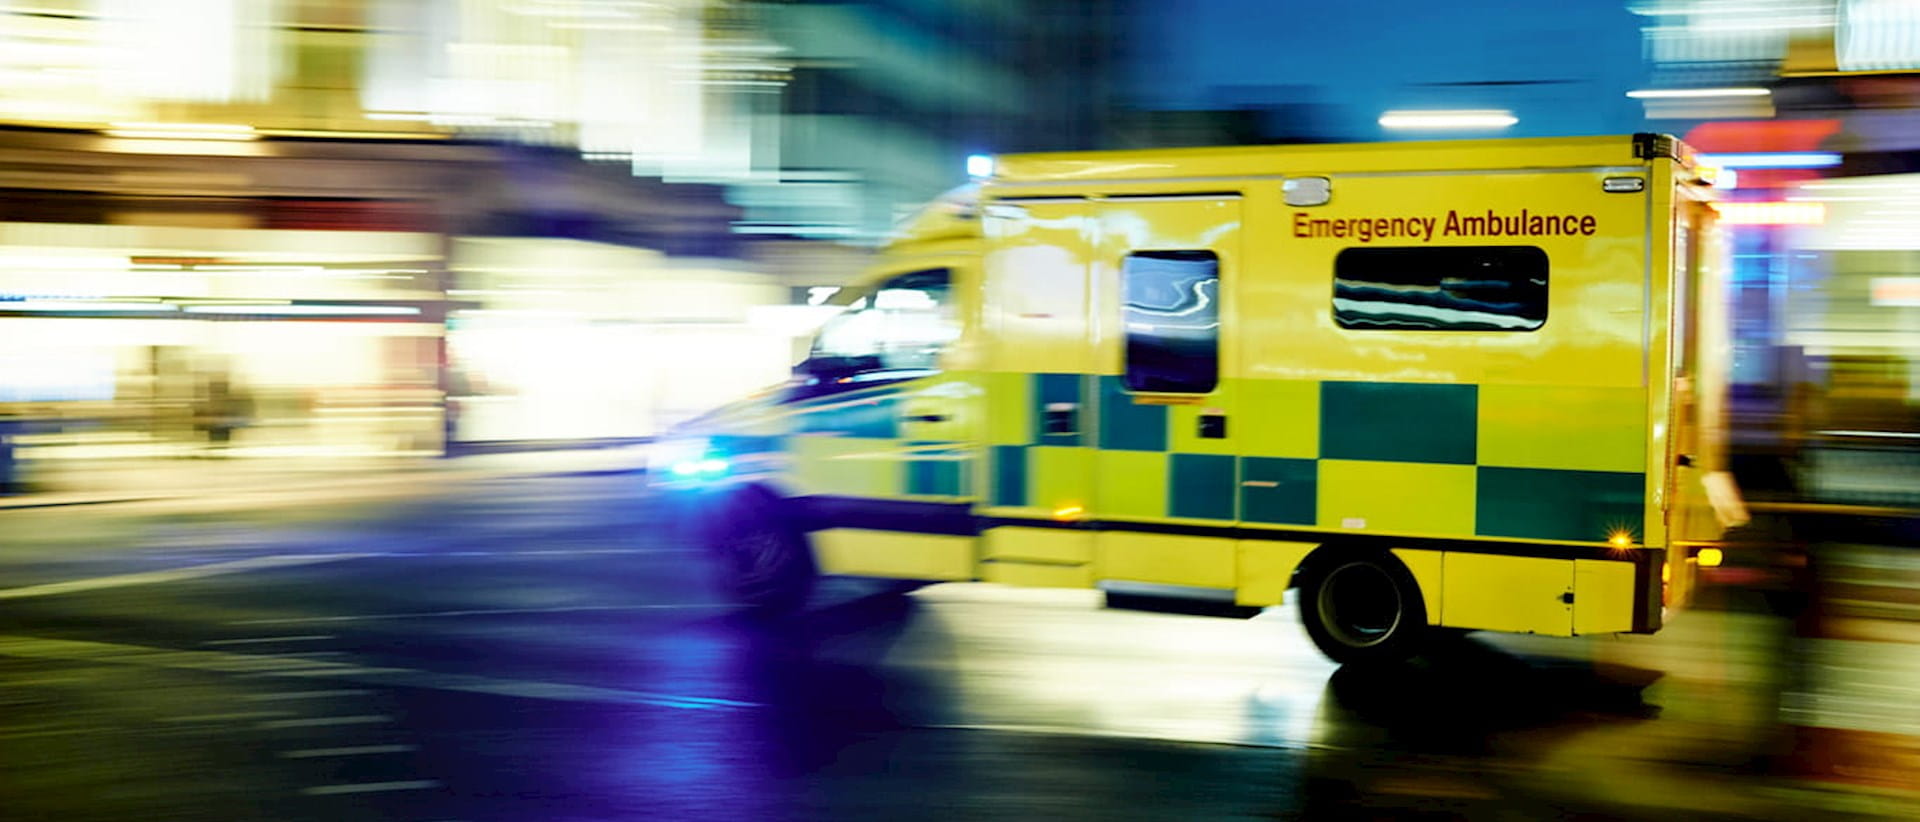 Blurred photograph of ambulance